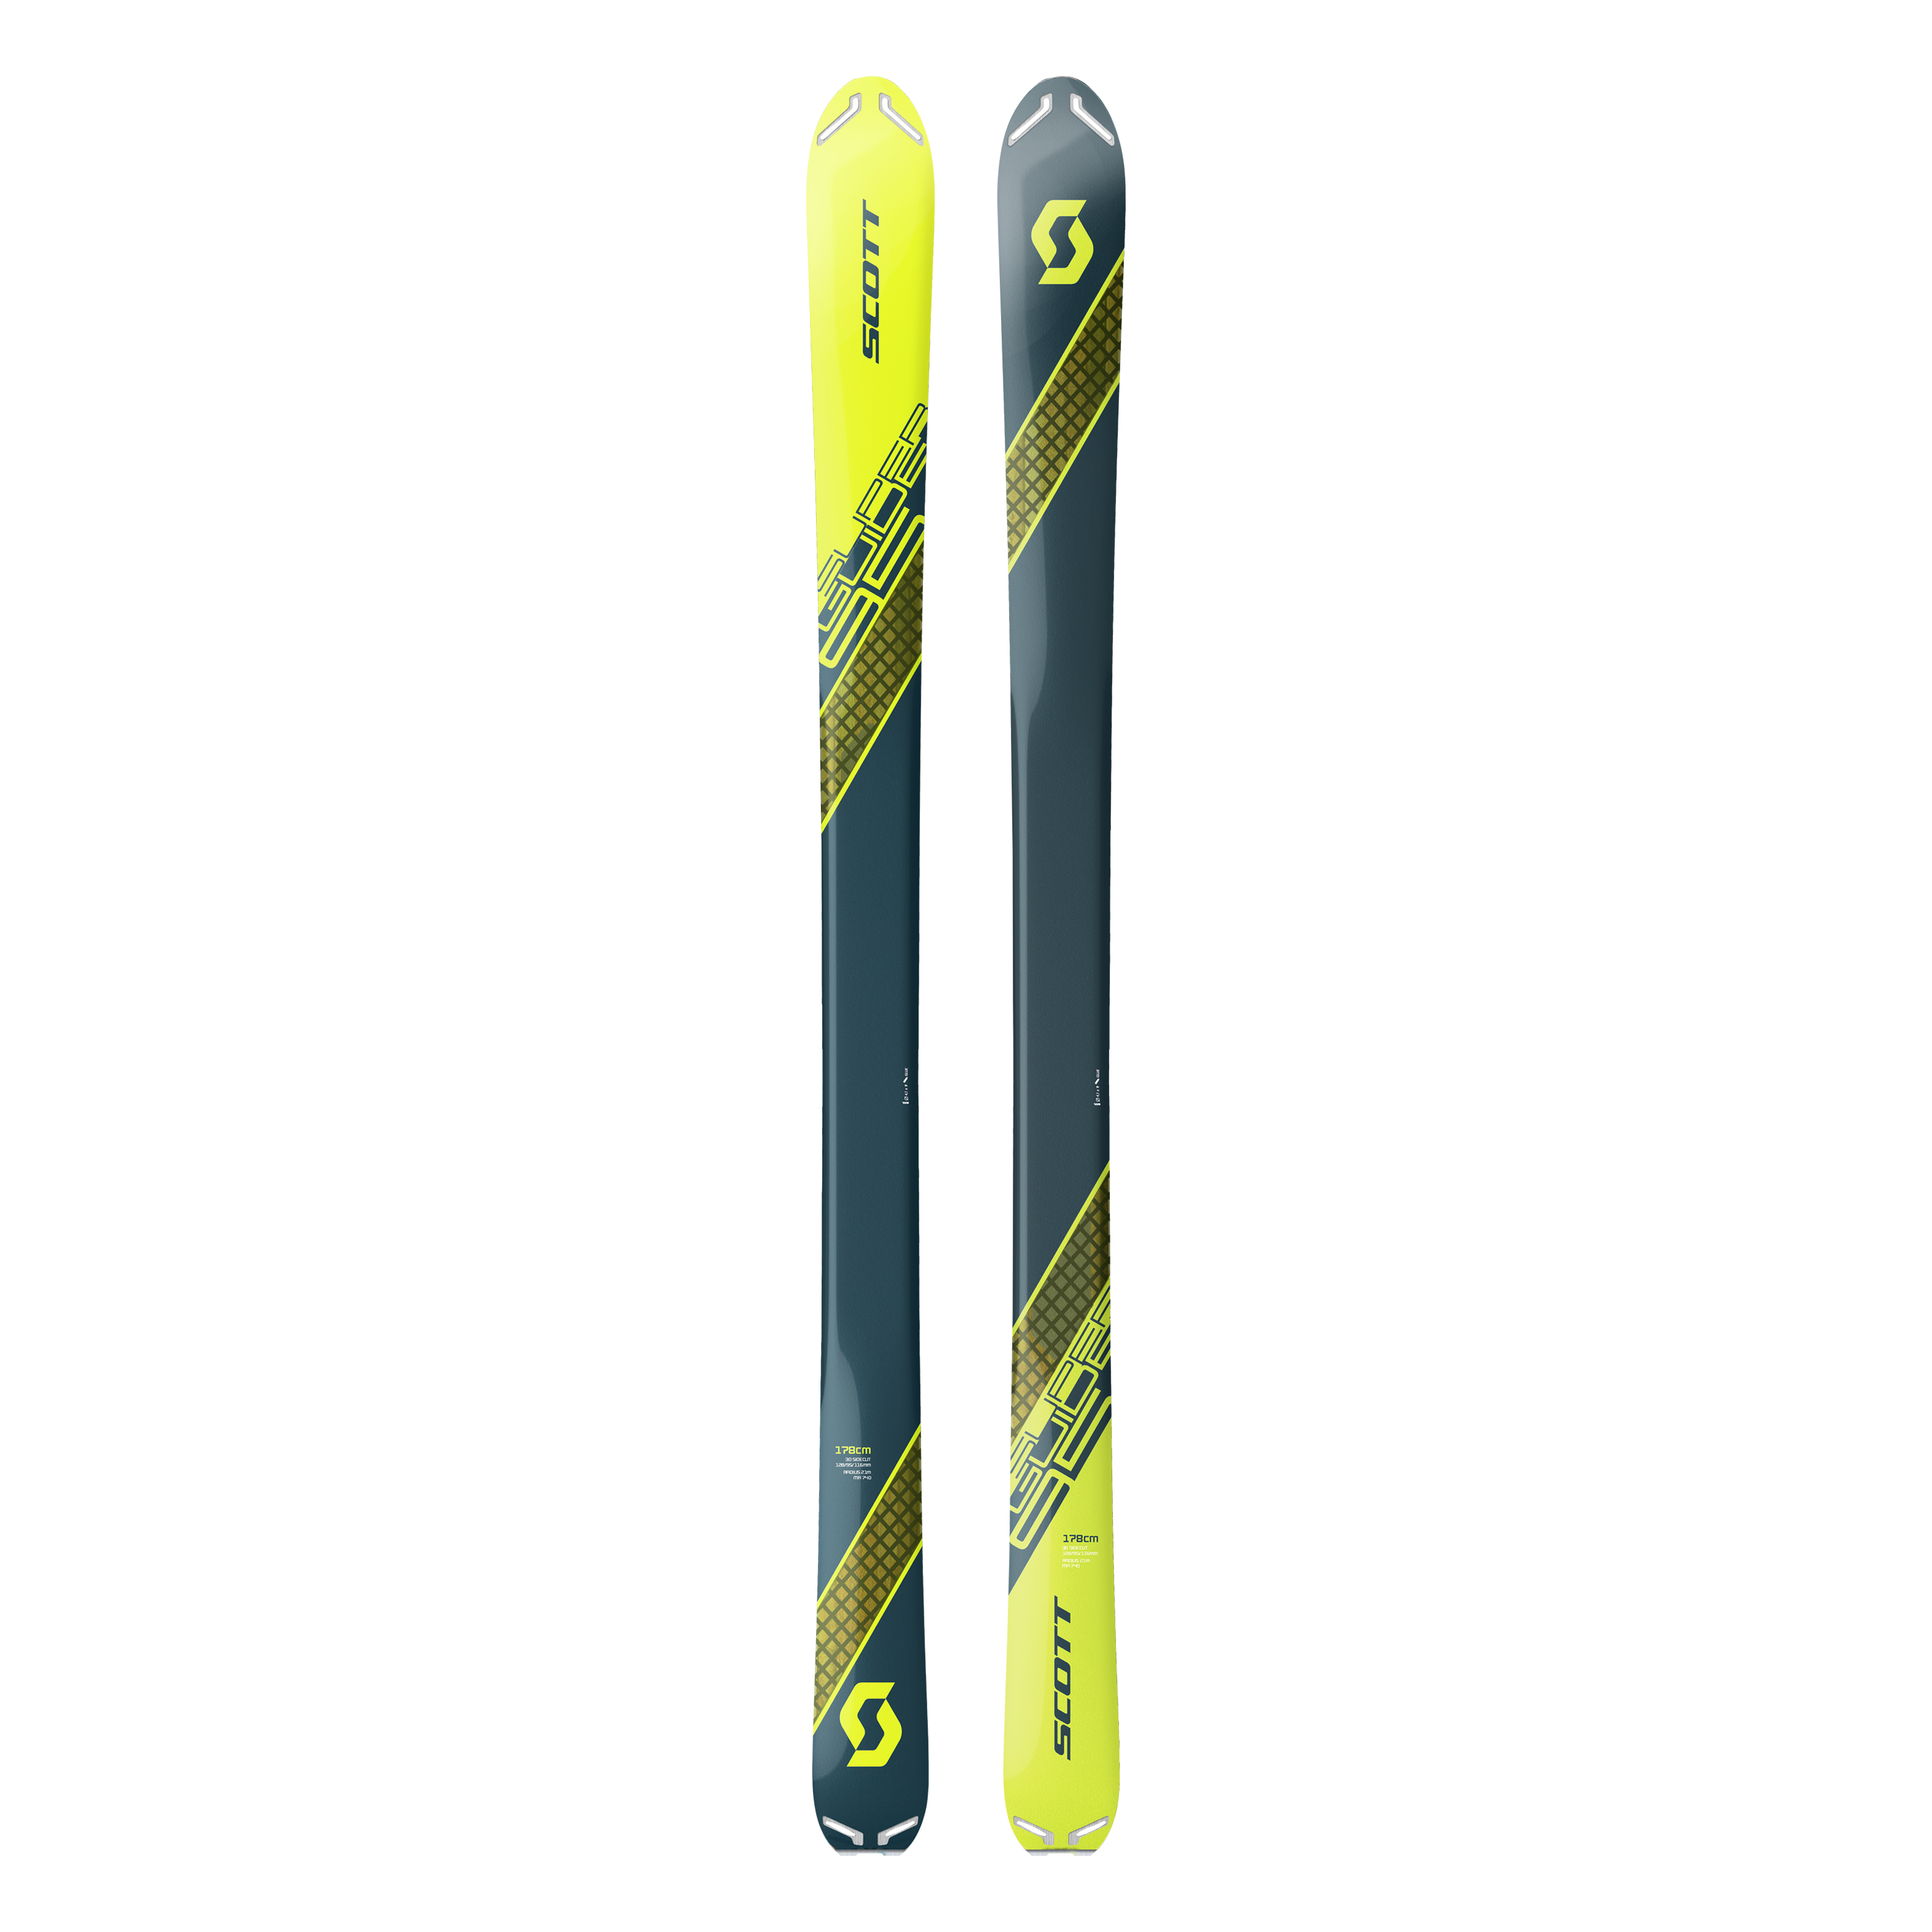 Ski de rando Superguide 95 2020